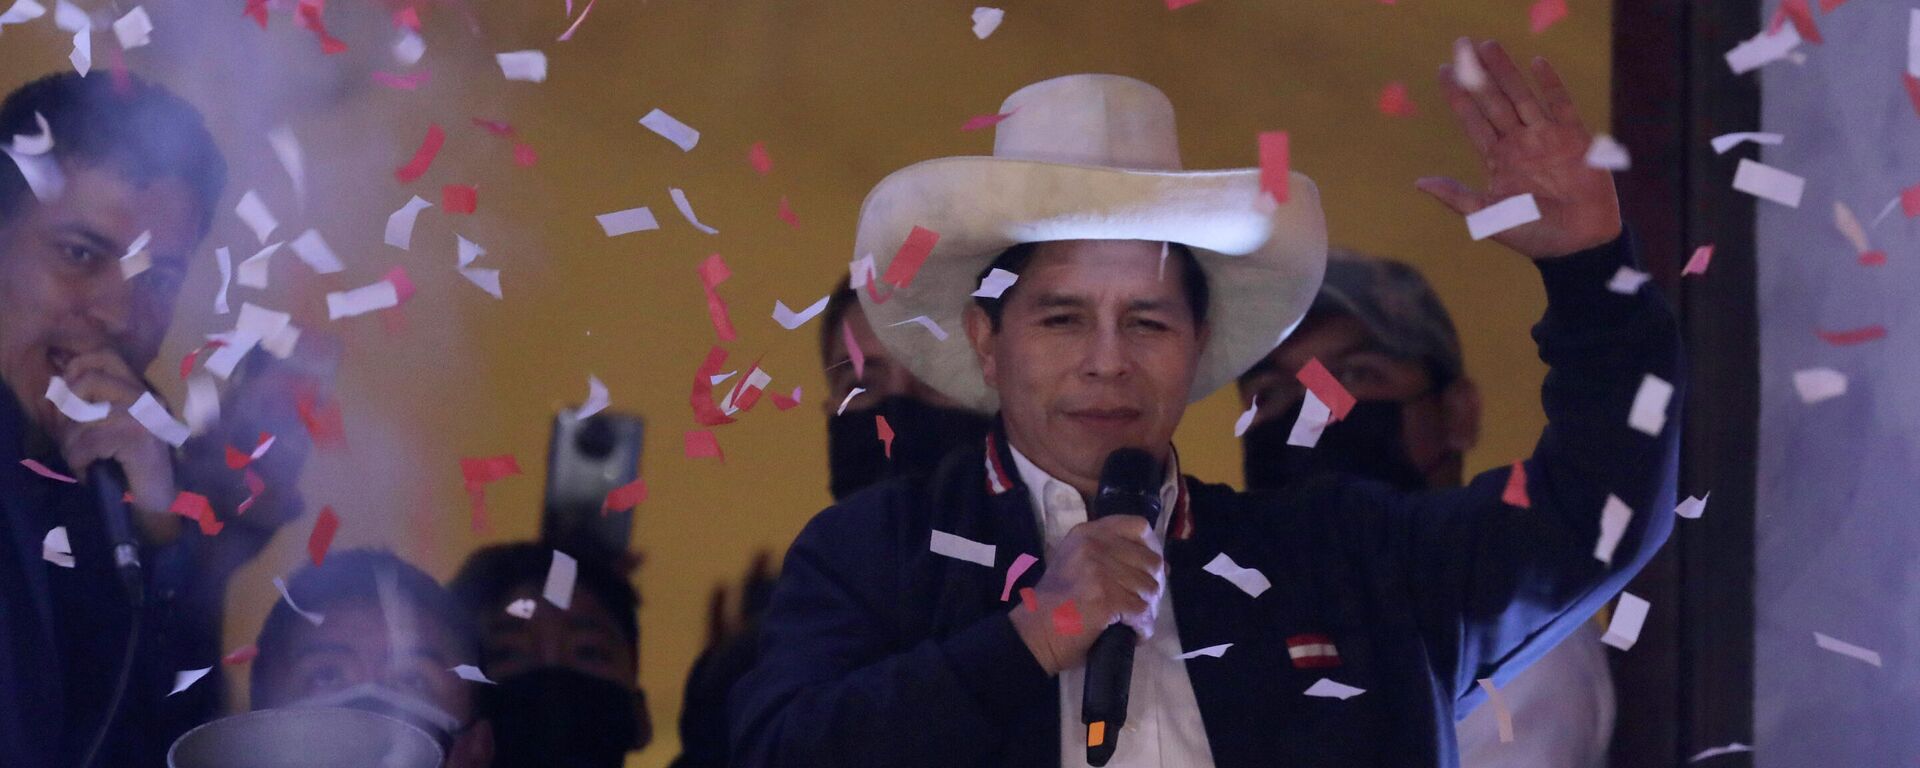 El presidente electo de Perú, Pedro Castillo, celebra su triunfo electoral - Sputnik Mundo, 1920, 23.07.2021